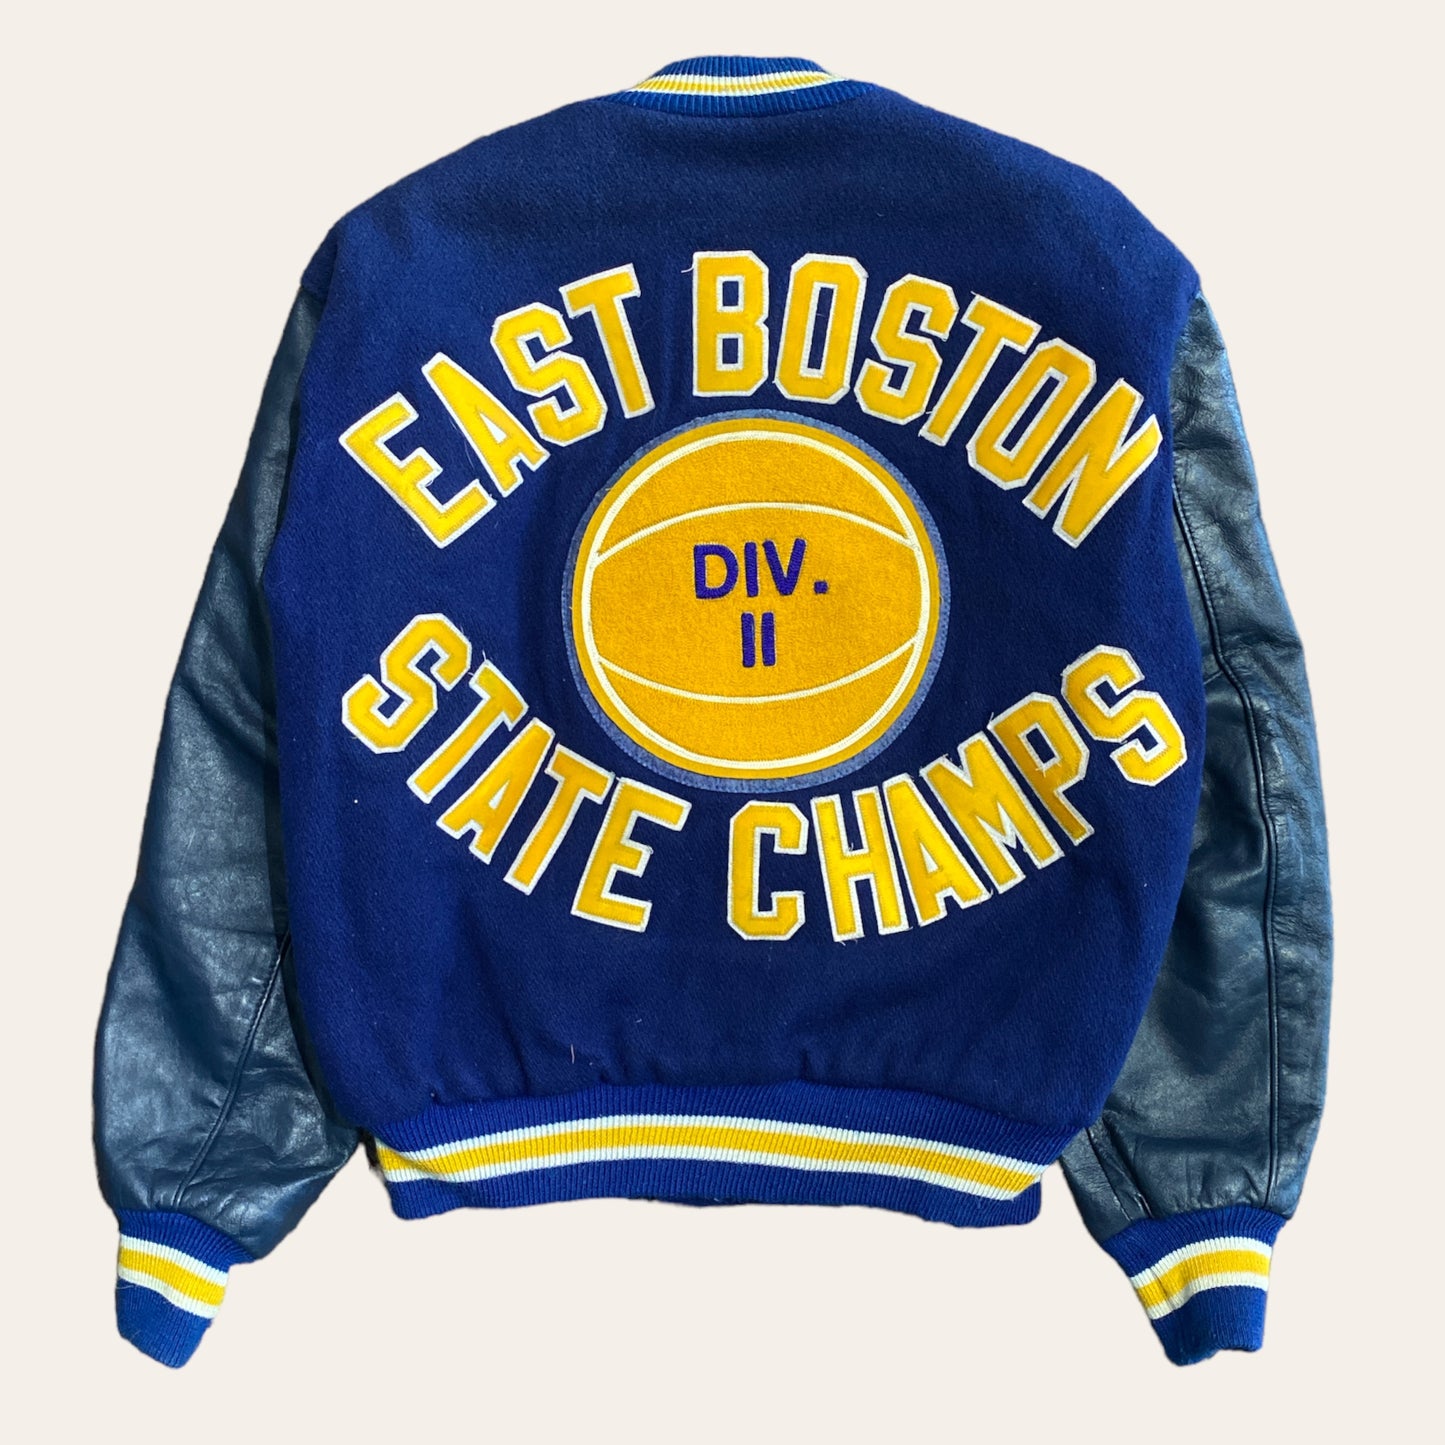 1992 EBHS Varsity Jacket Size M